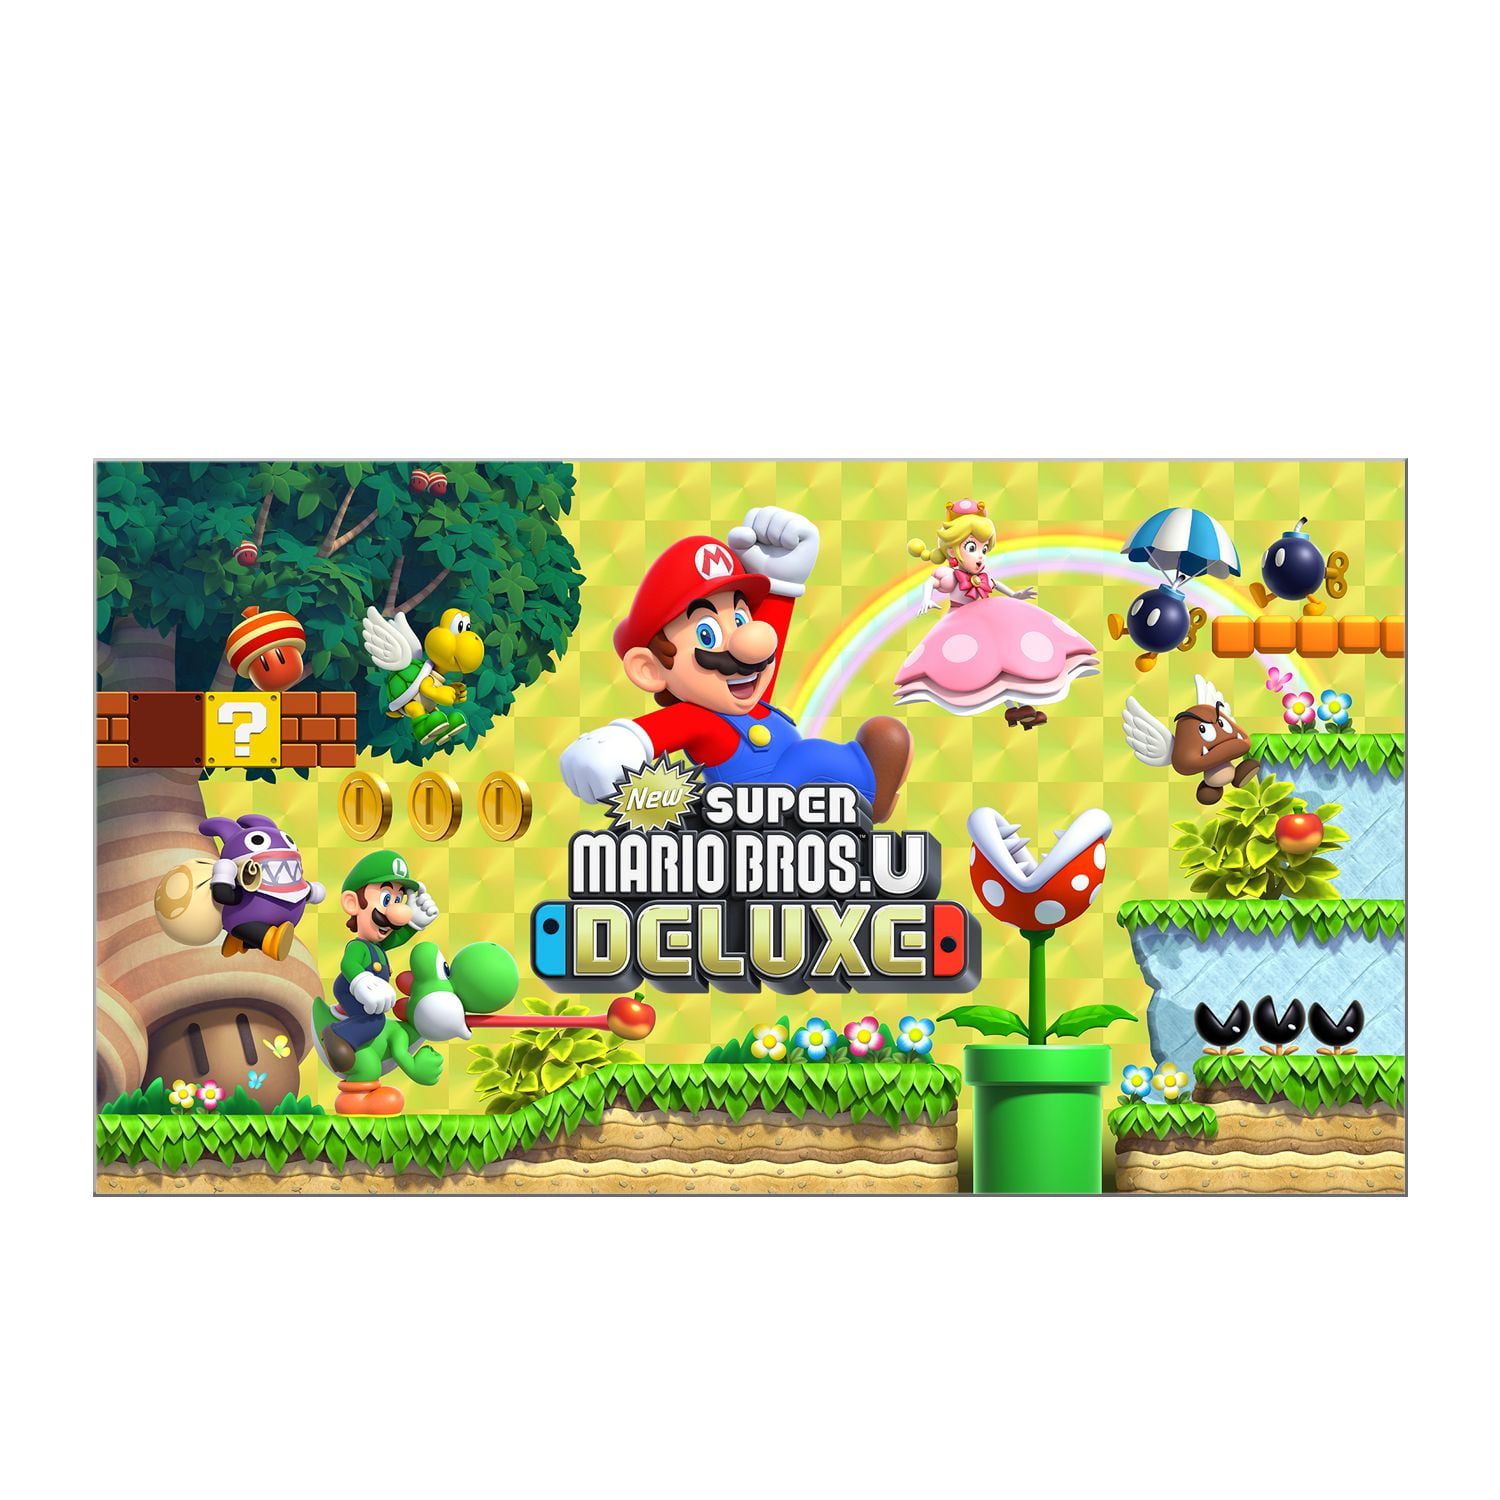 New Super Bros Deluxe- Nintendo Switch [Digital] - Walmart.com